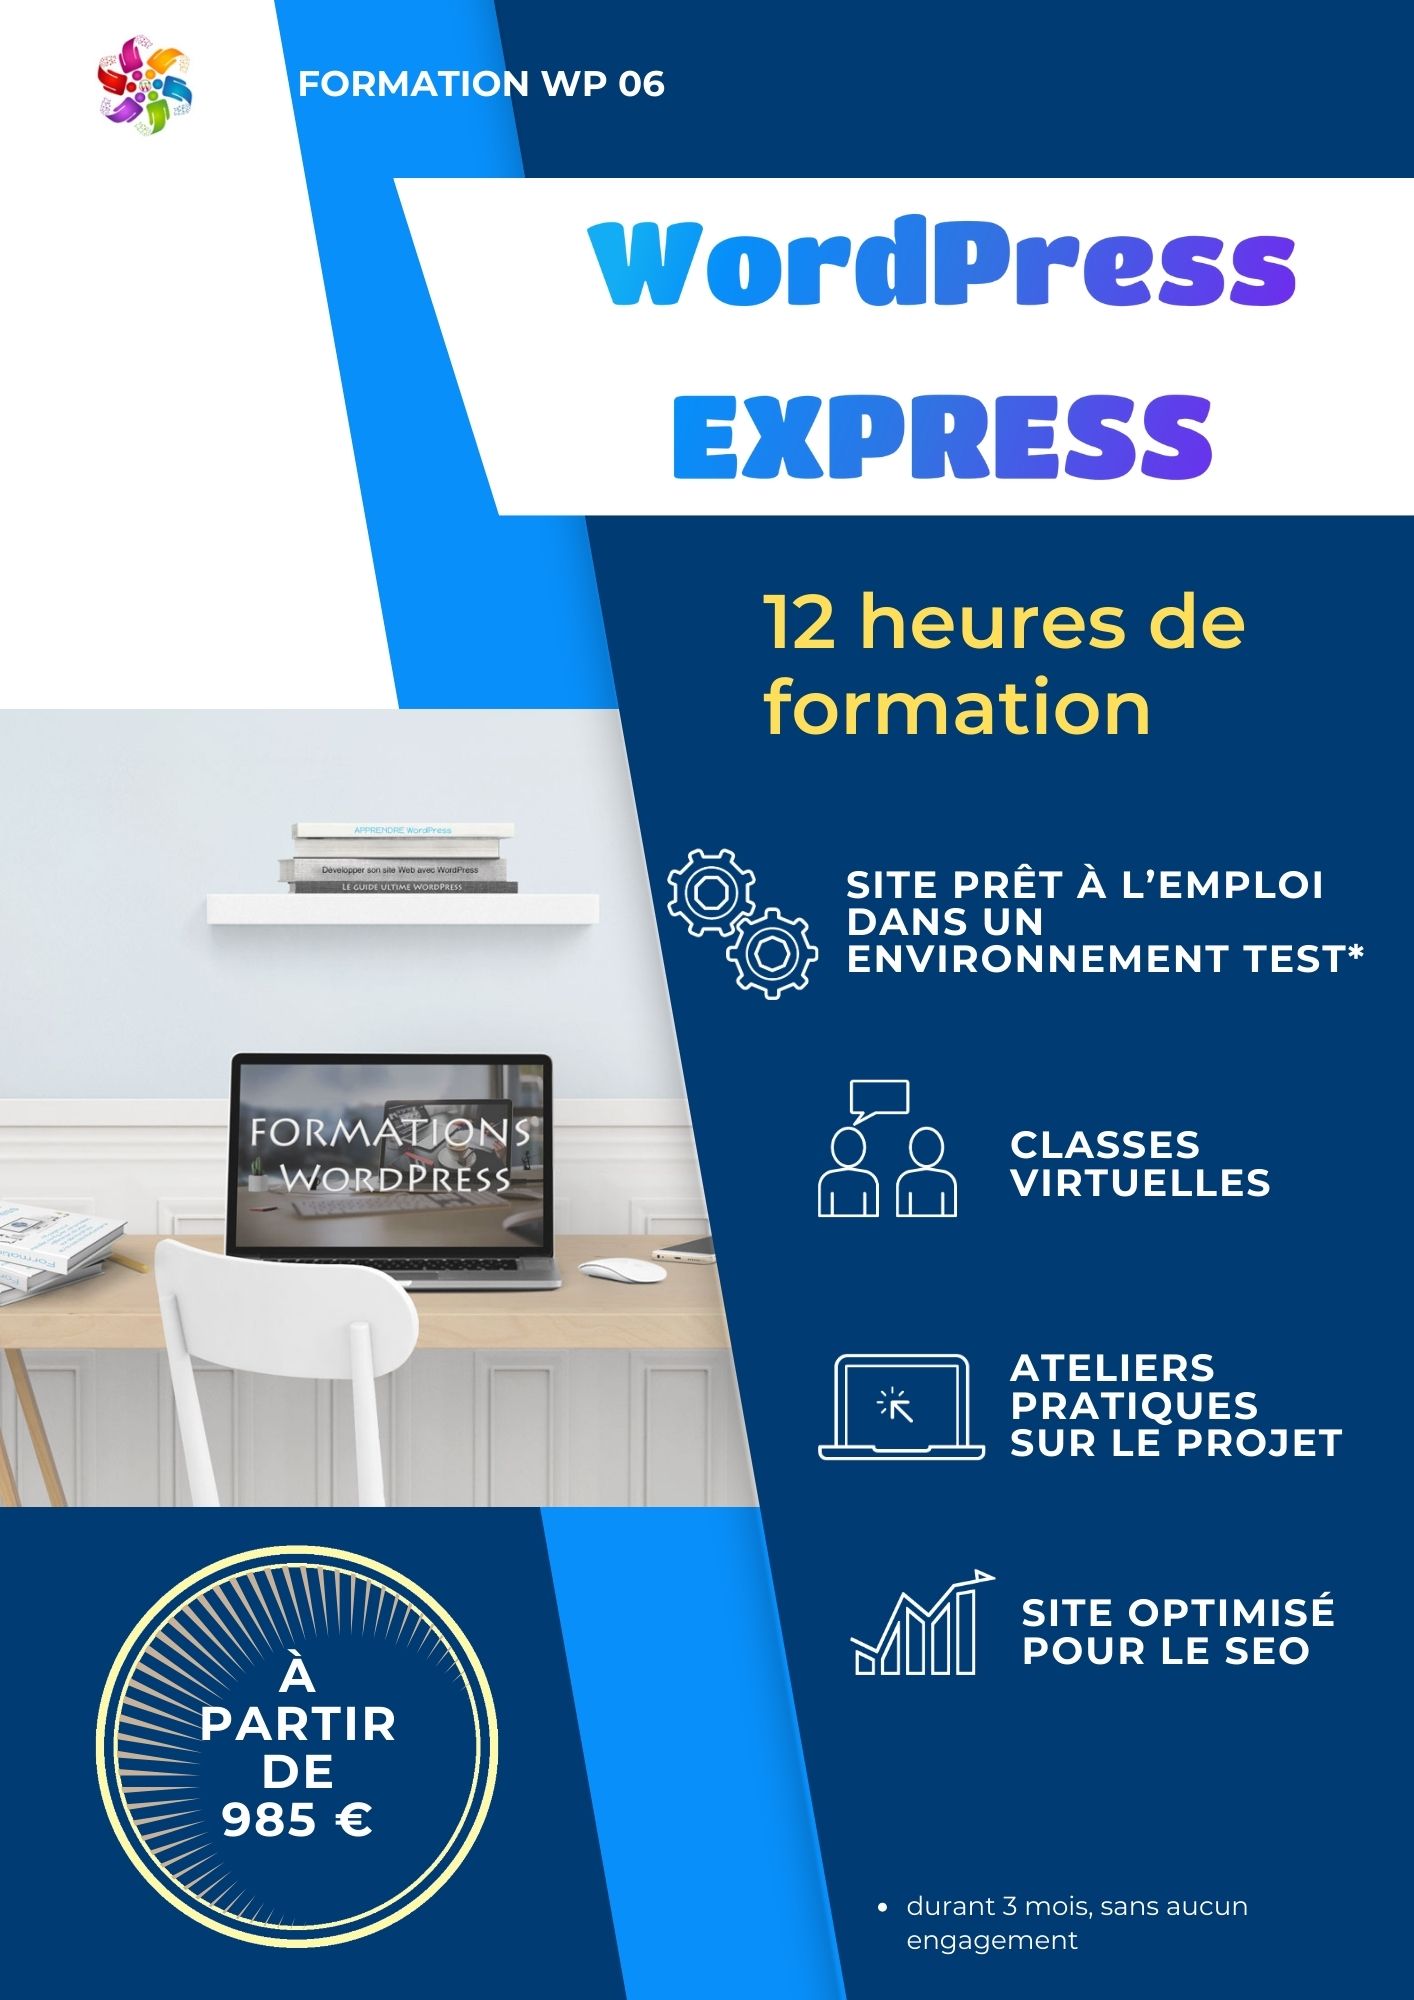 Encart informatif de la formation "WordPress Express" pour créer un site Internet proposée par FORMATION WP 06